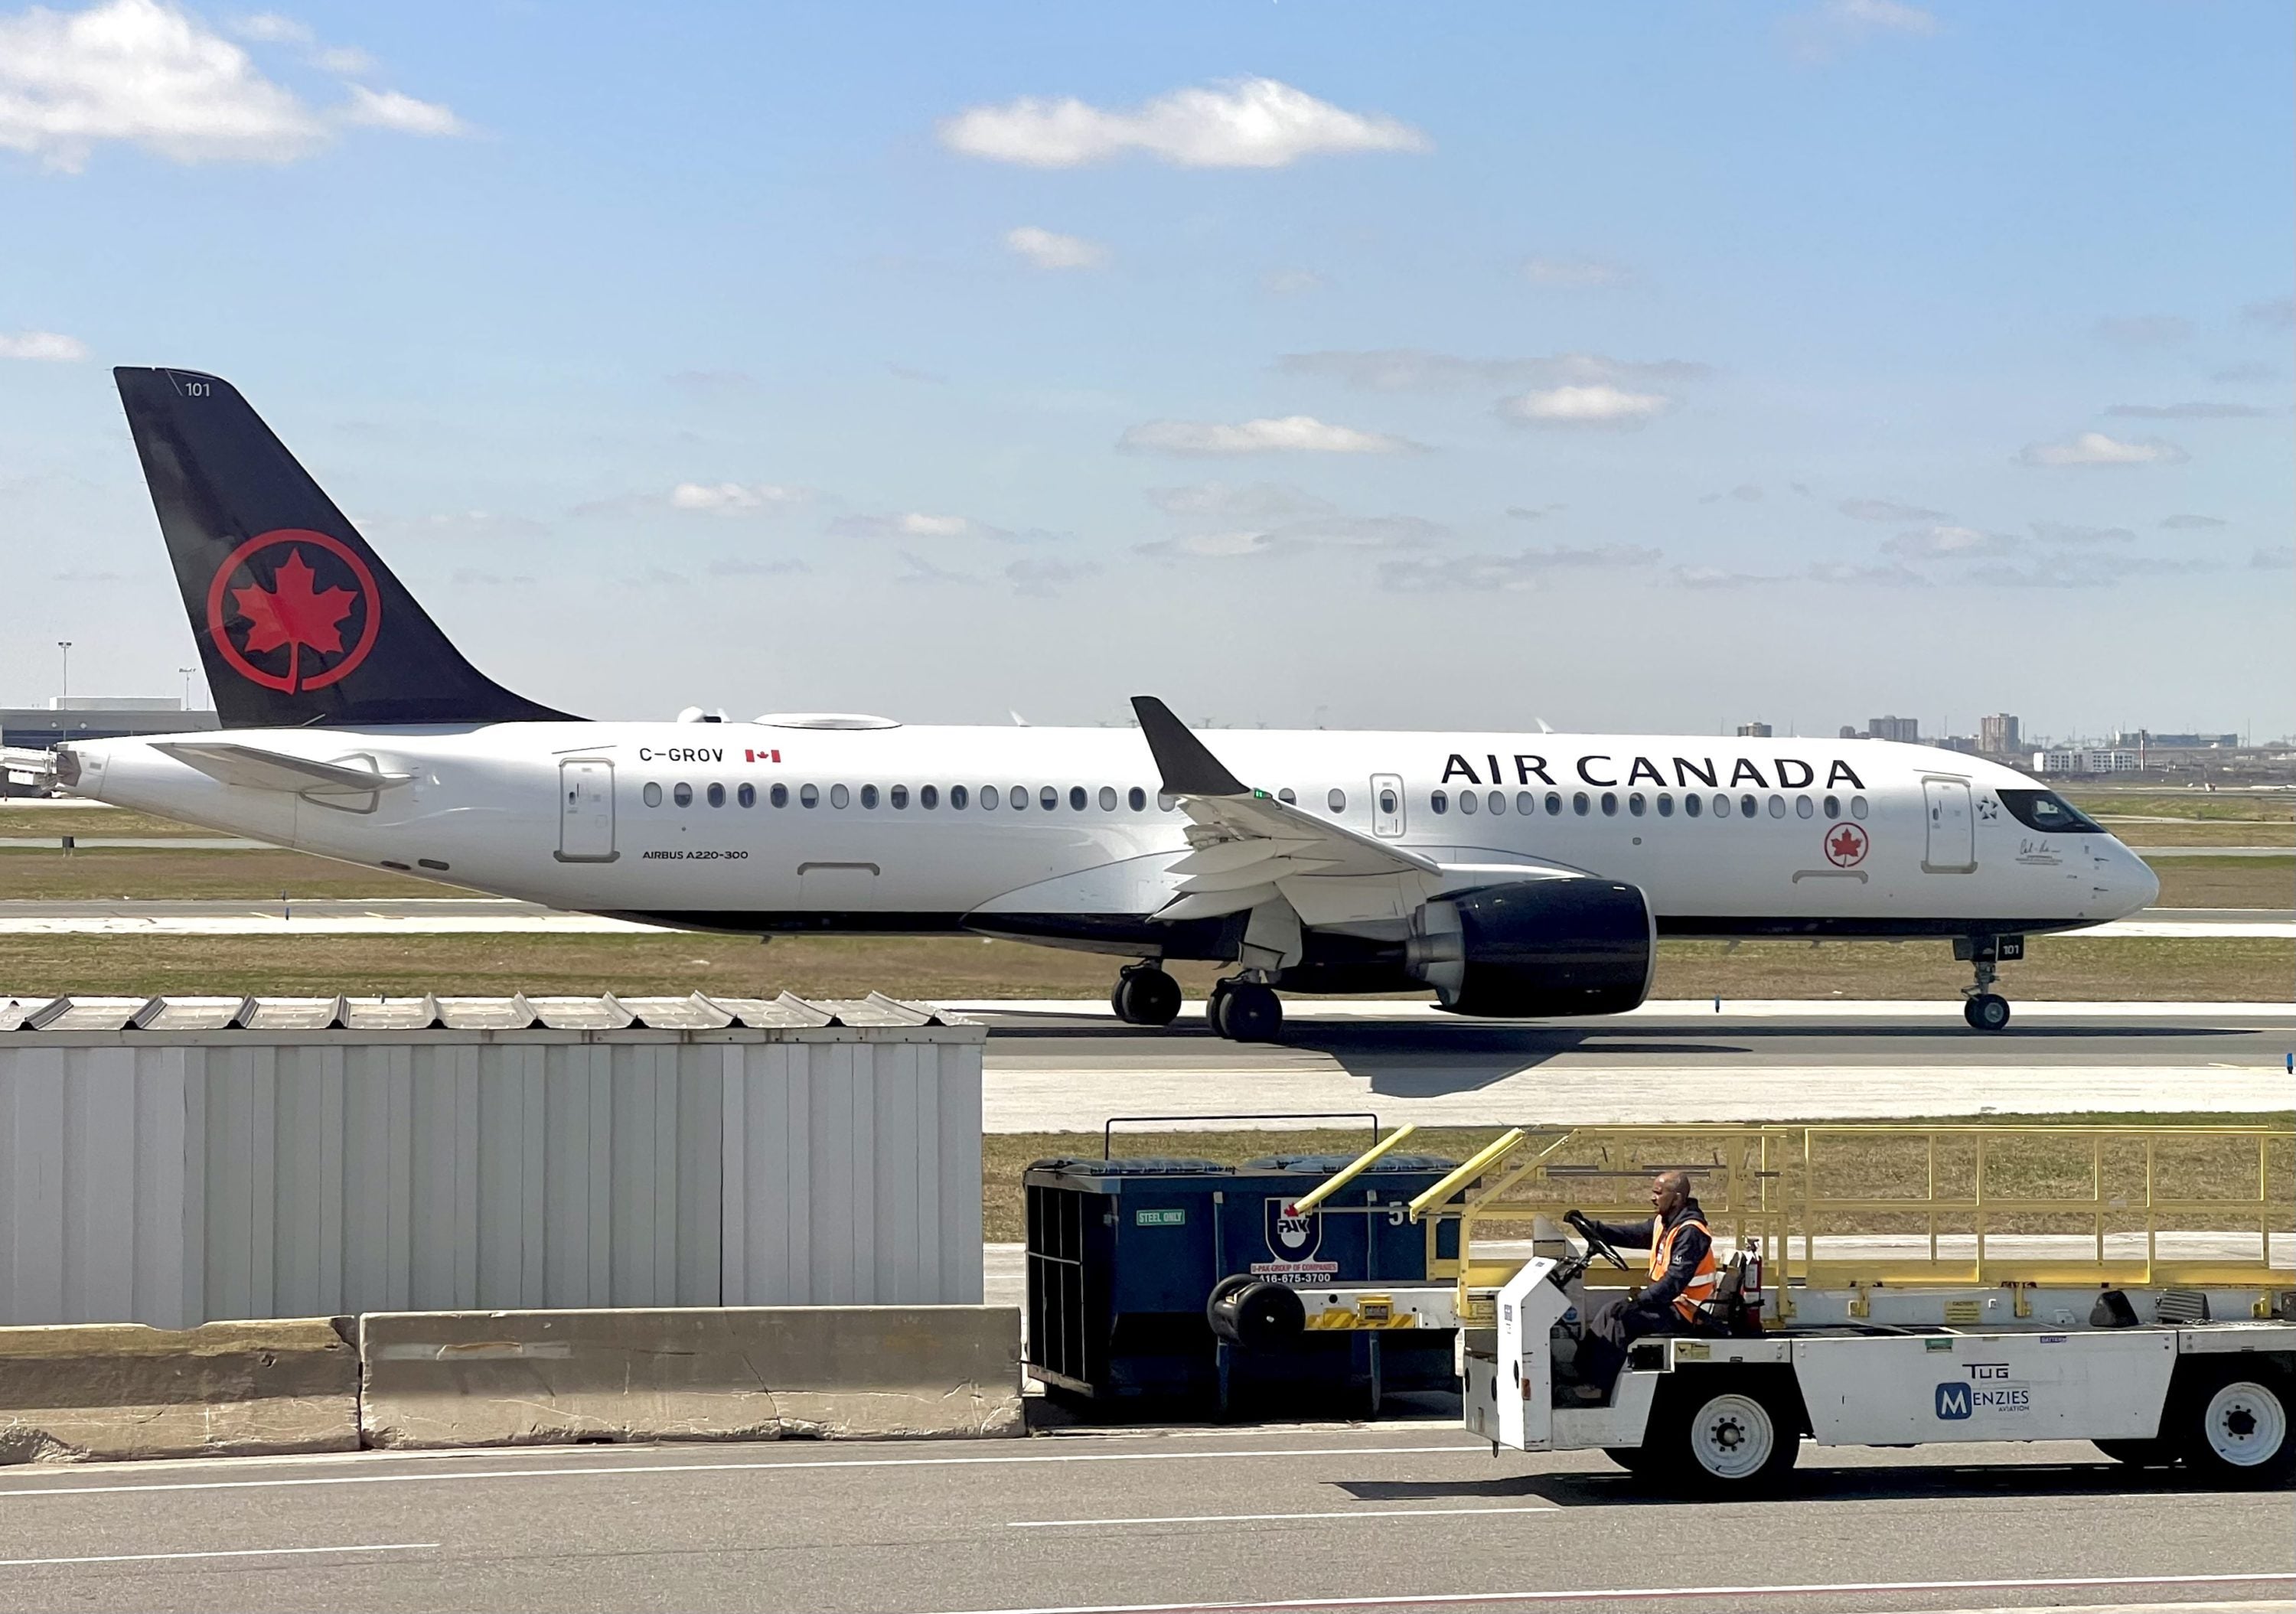 Air Canada Airbus A220 at Toronto Pearson Airport.